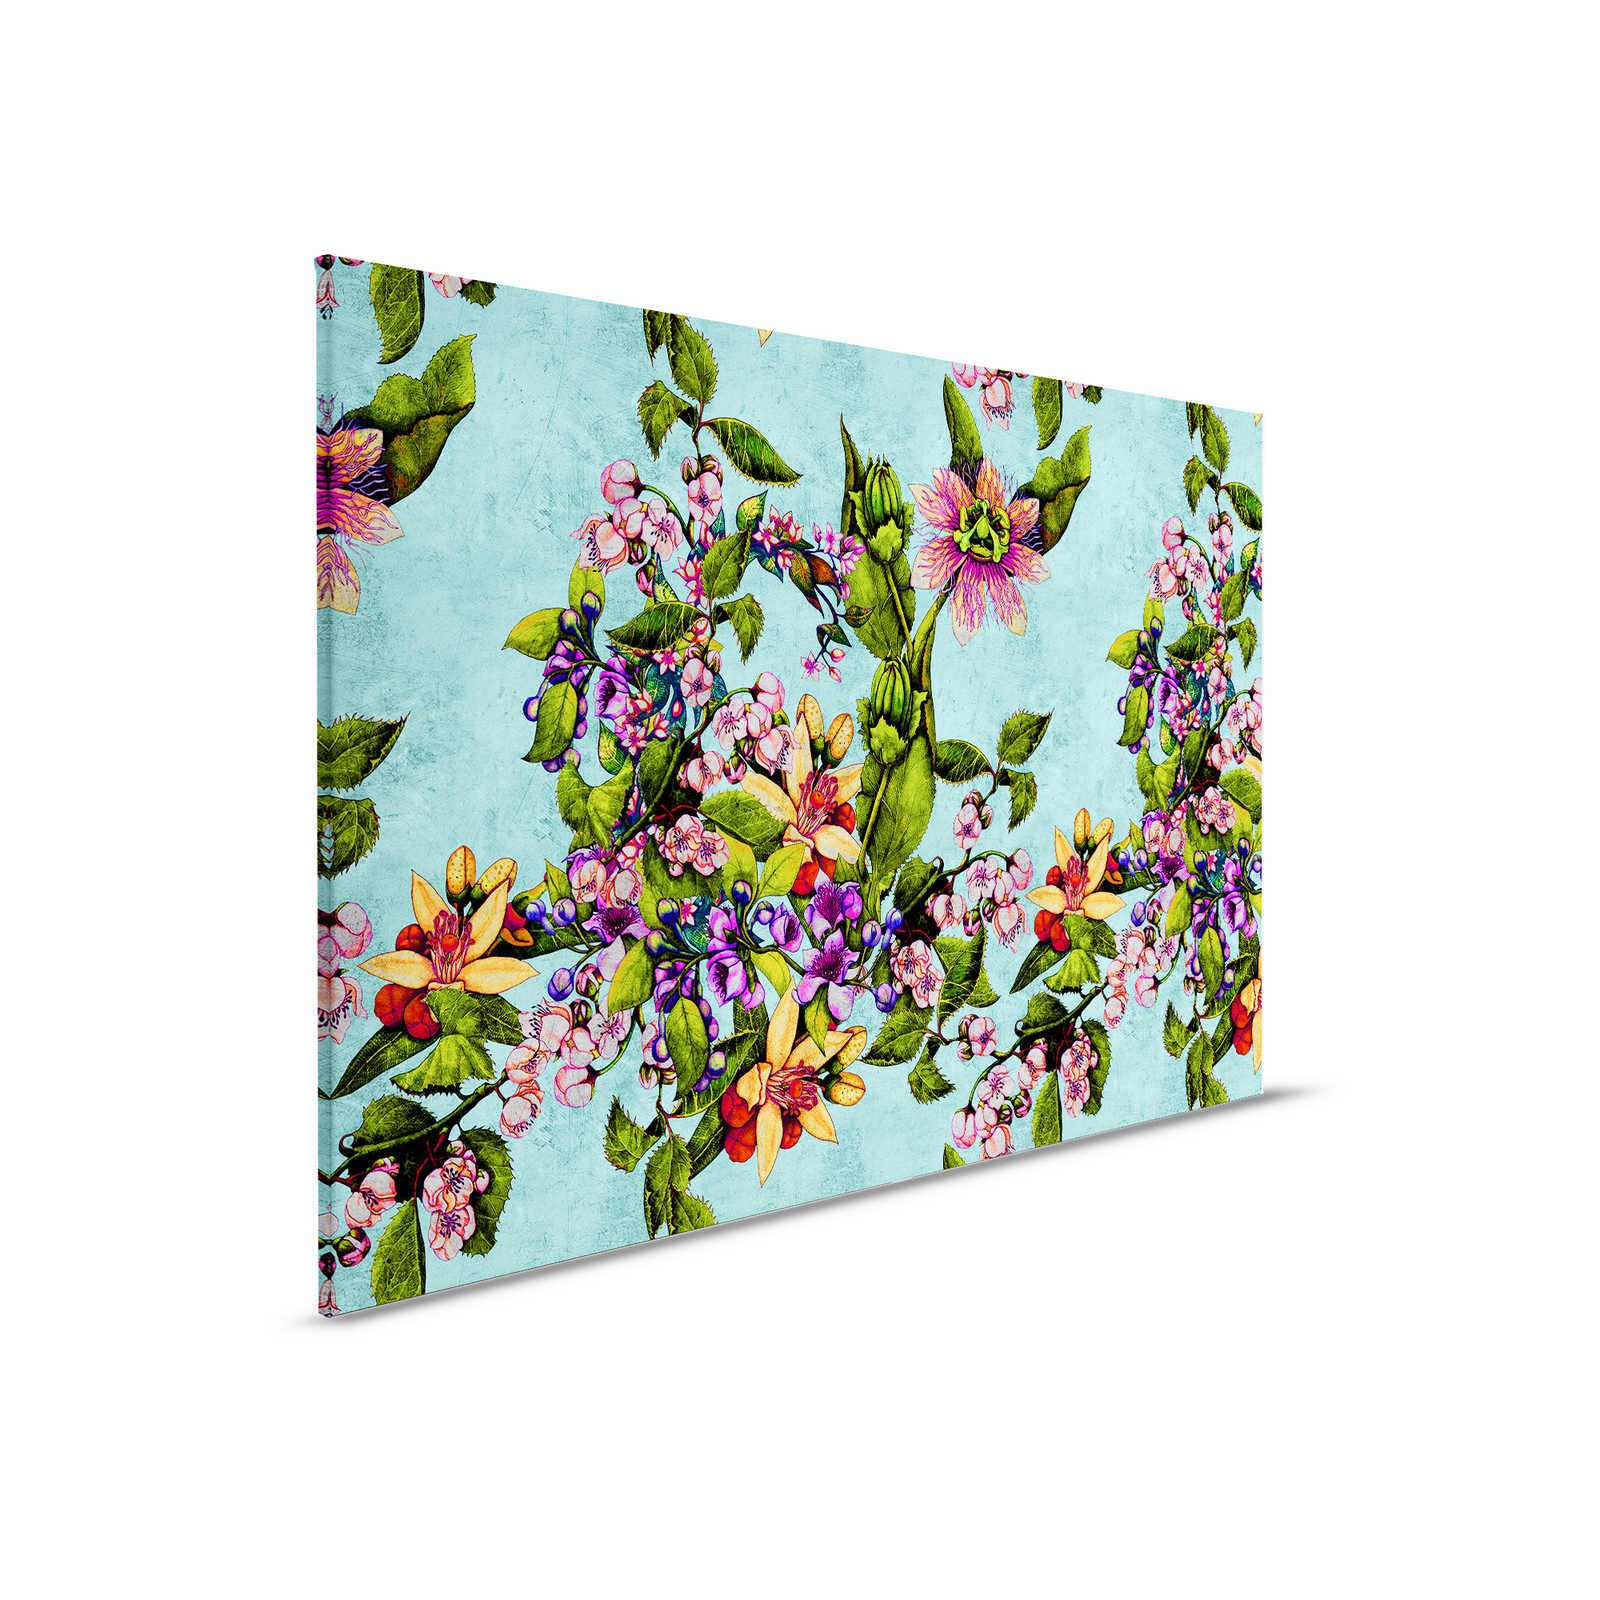 Tropical Passion 1 - Toile tropicale avec motif de fleurs - 0,90 m x 0,60 m
